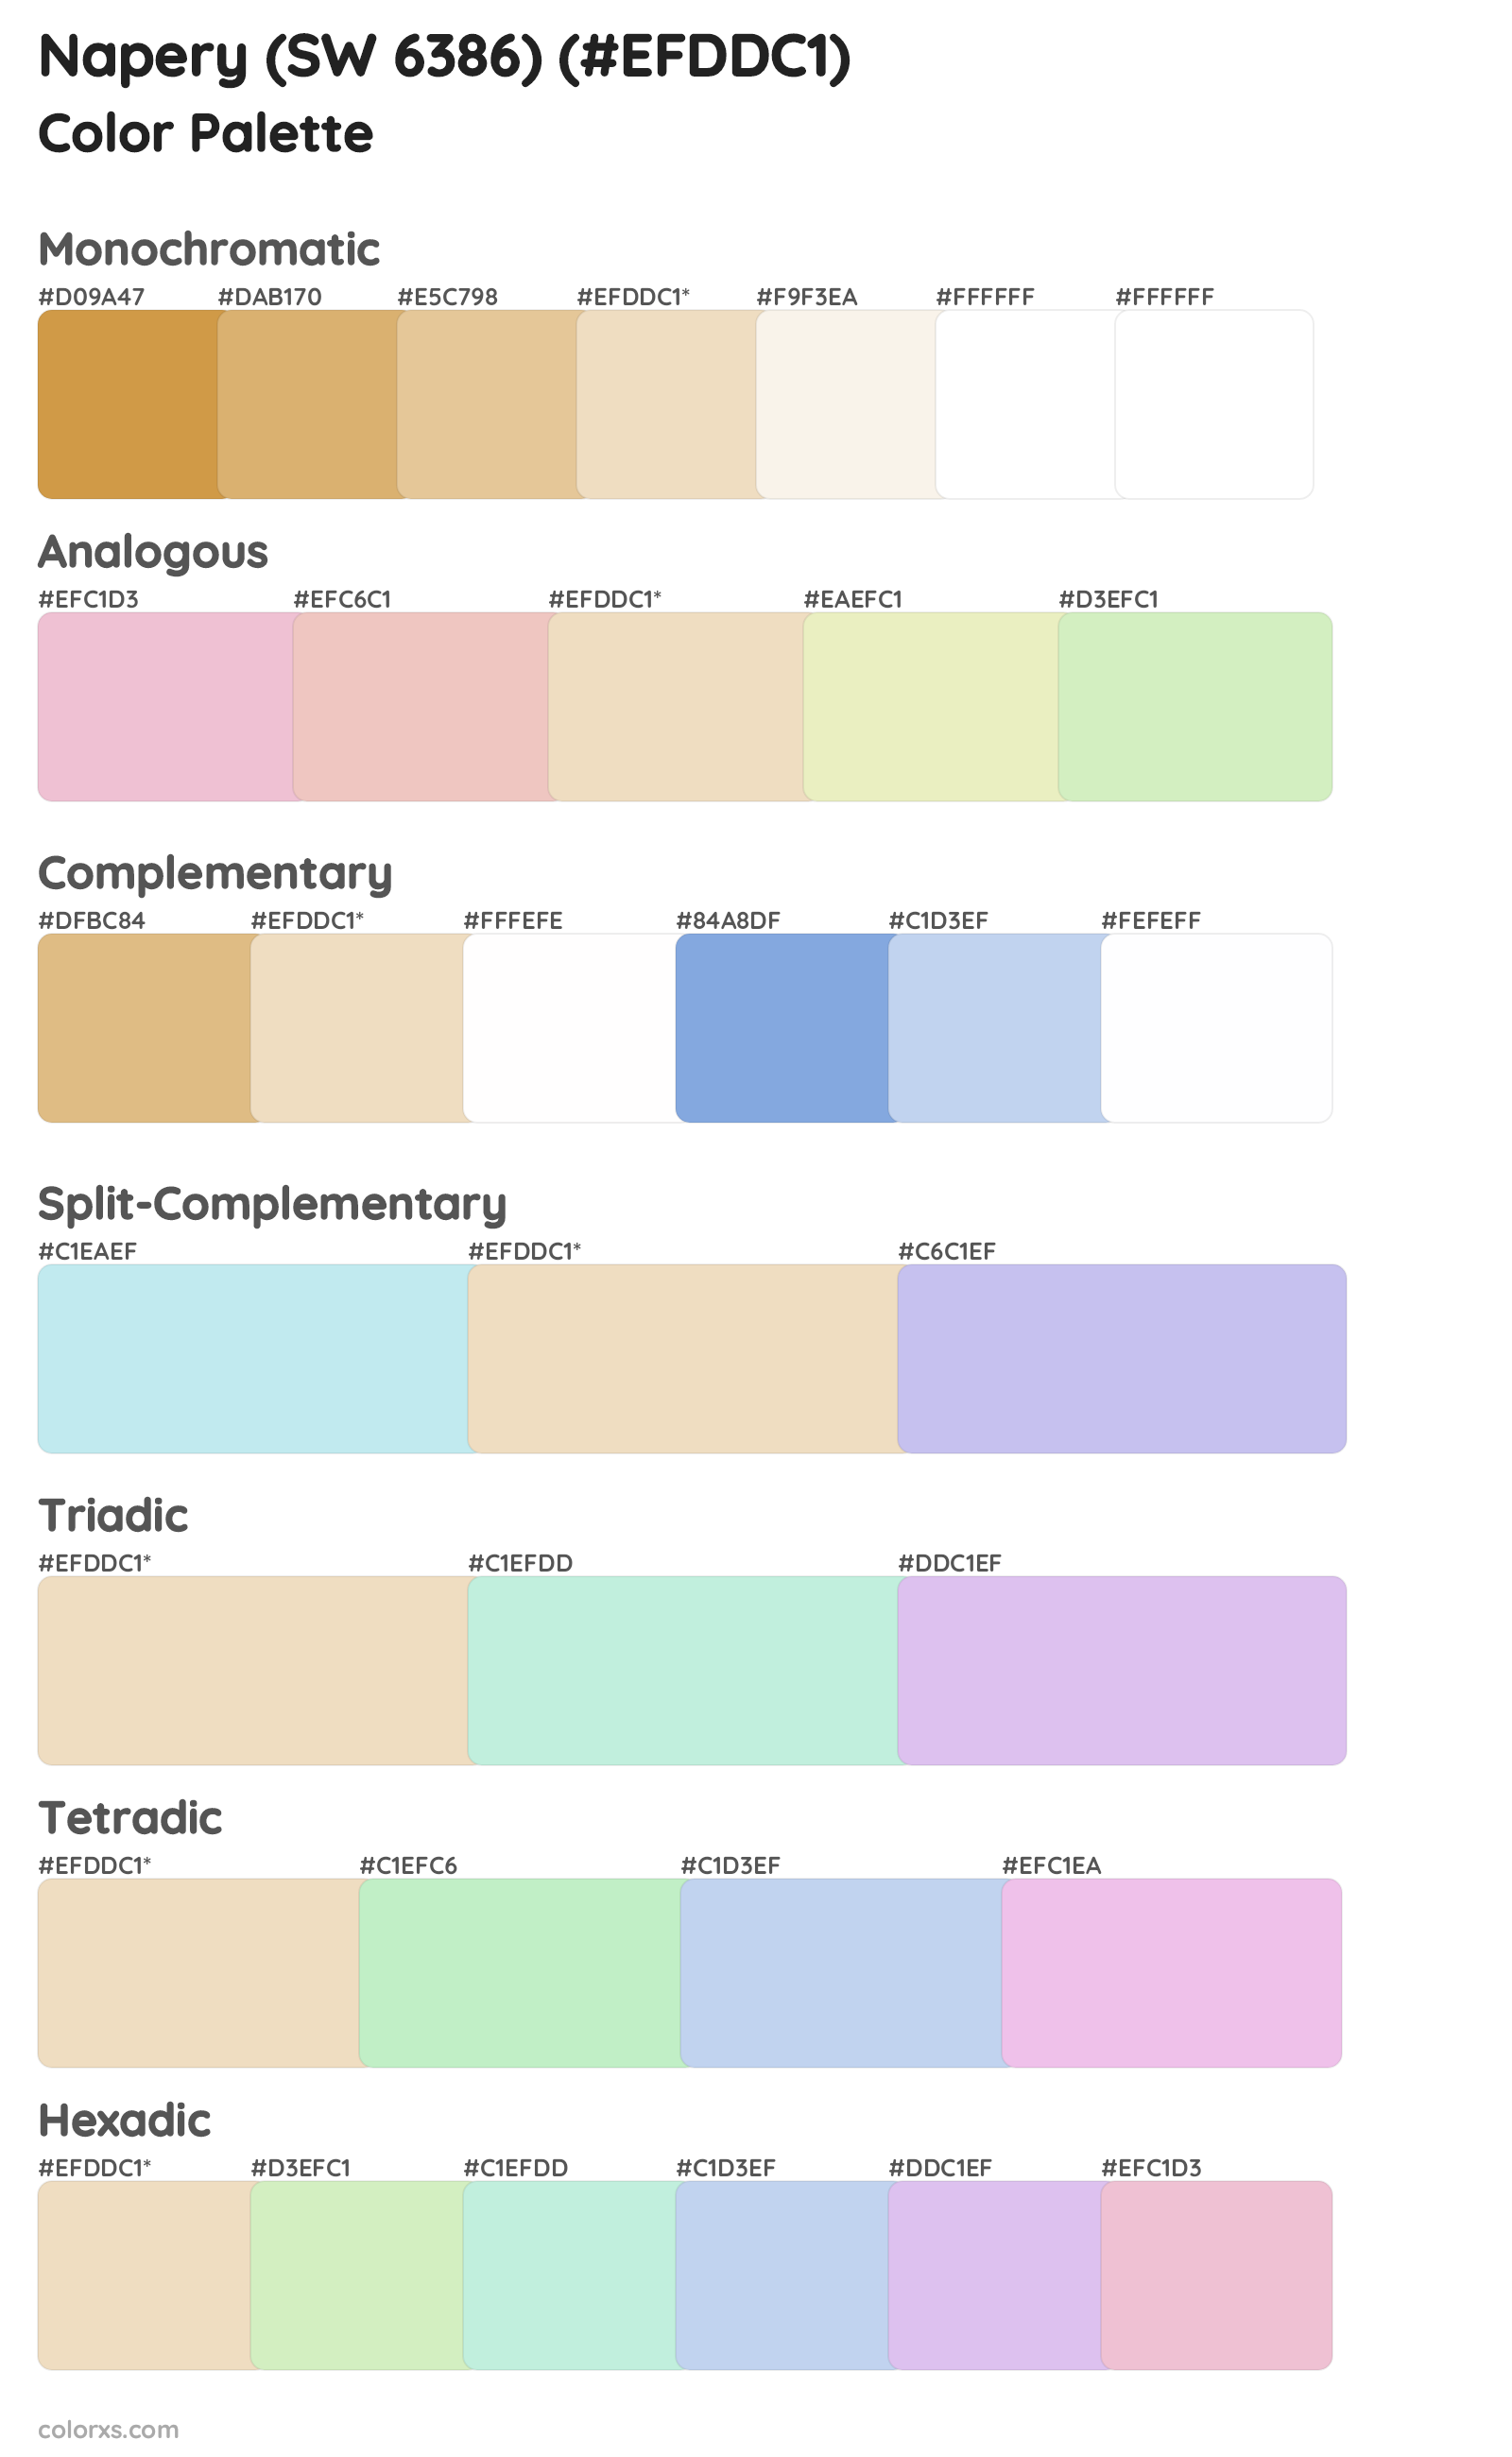 Napery (SW 6386) Color Scheme Palettes